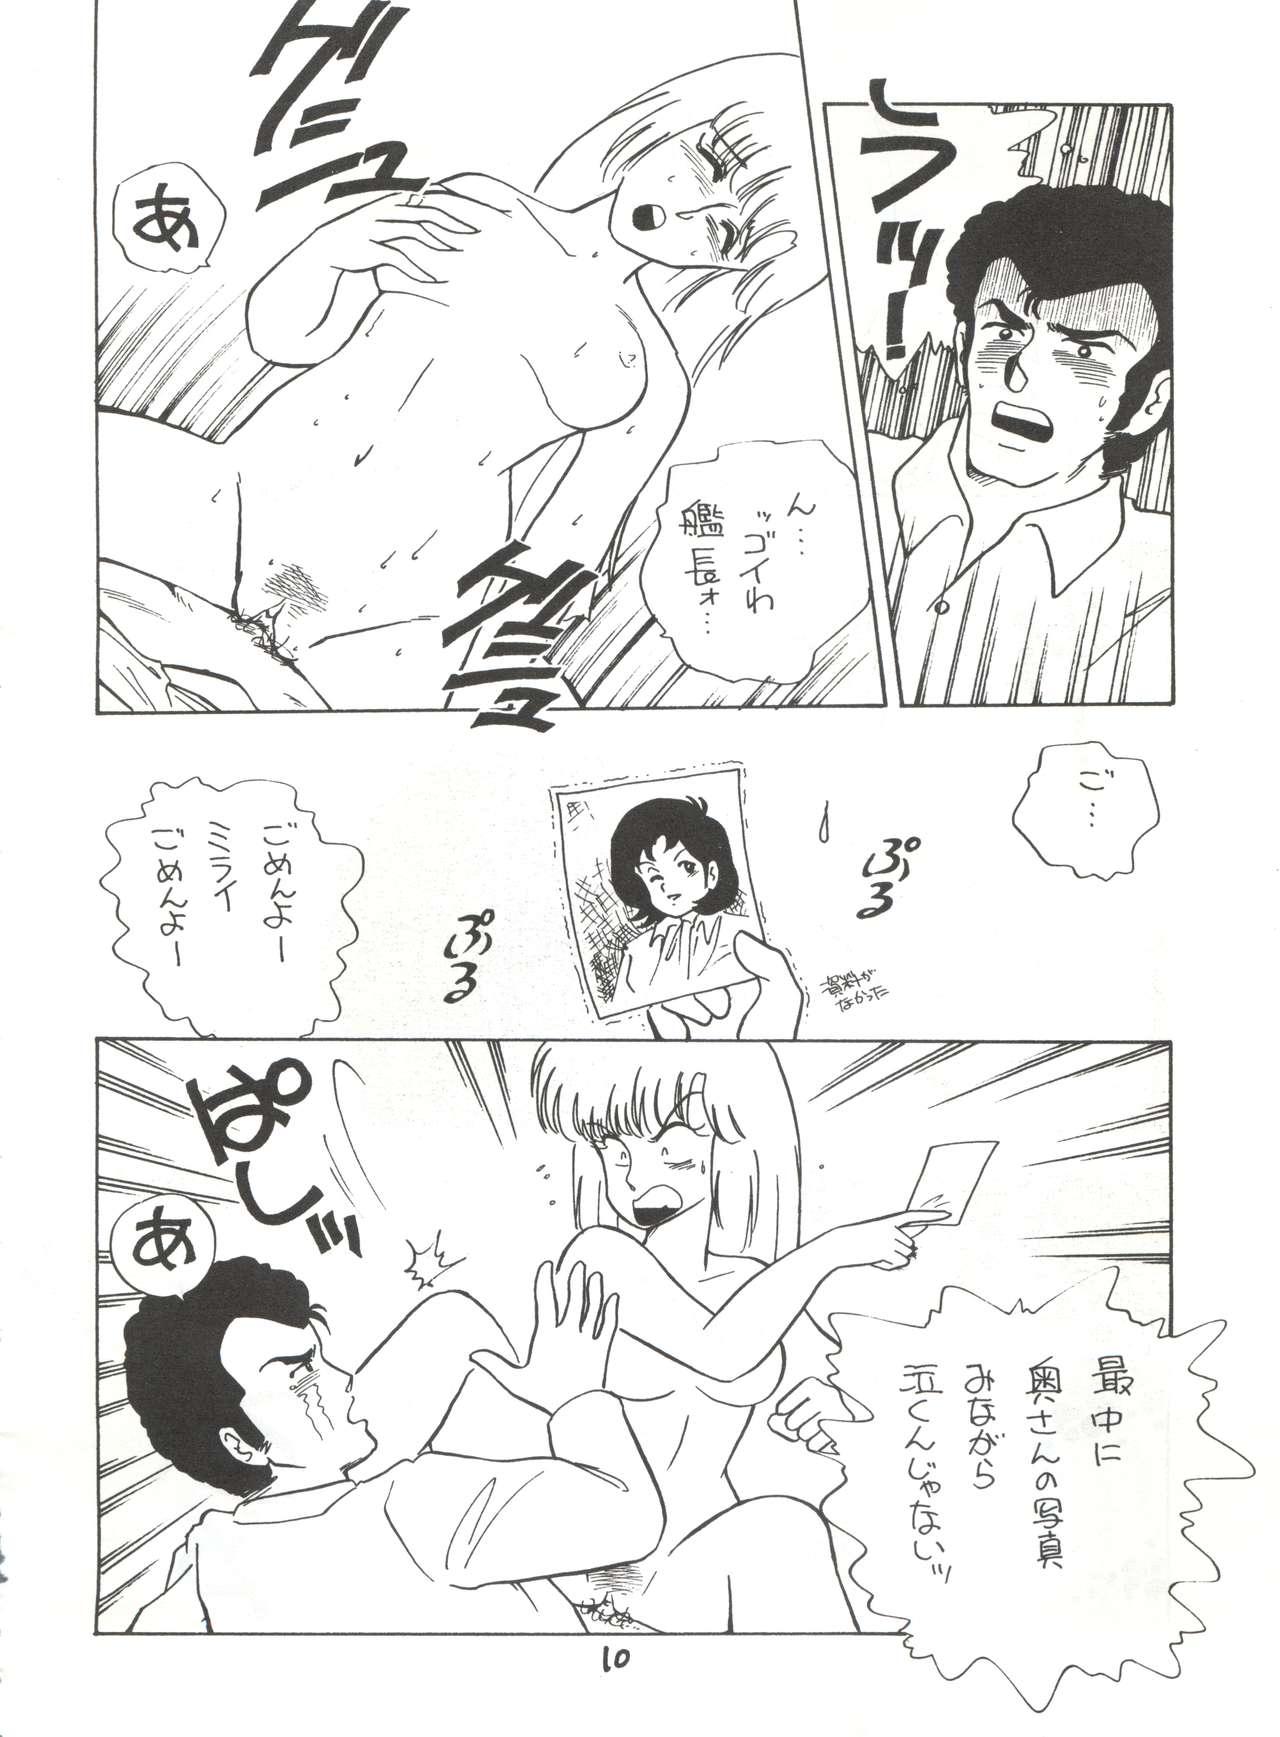 Dance Fantazio Kaj Realo 5&6 Gappei-gou - Gundam zz People Having Sex - Page 10